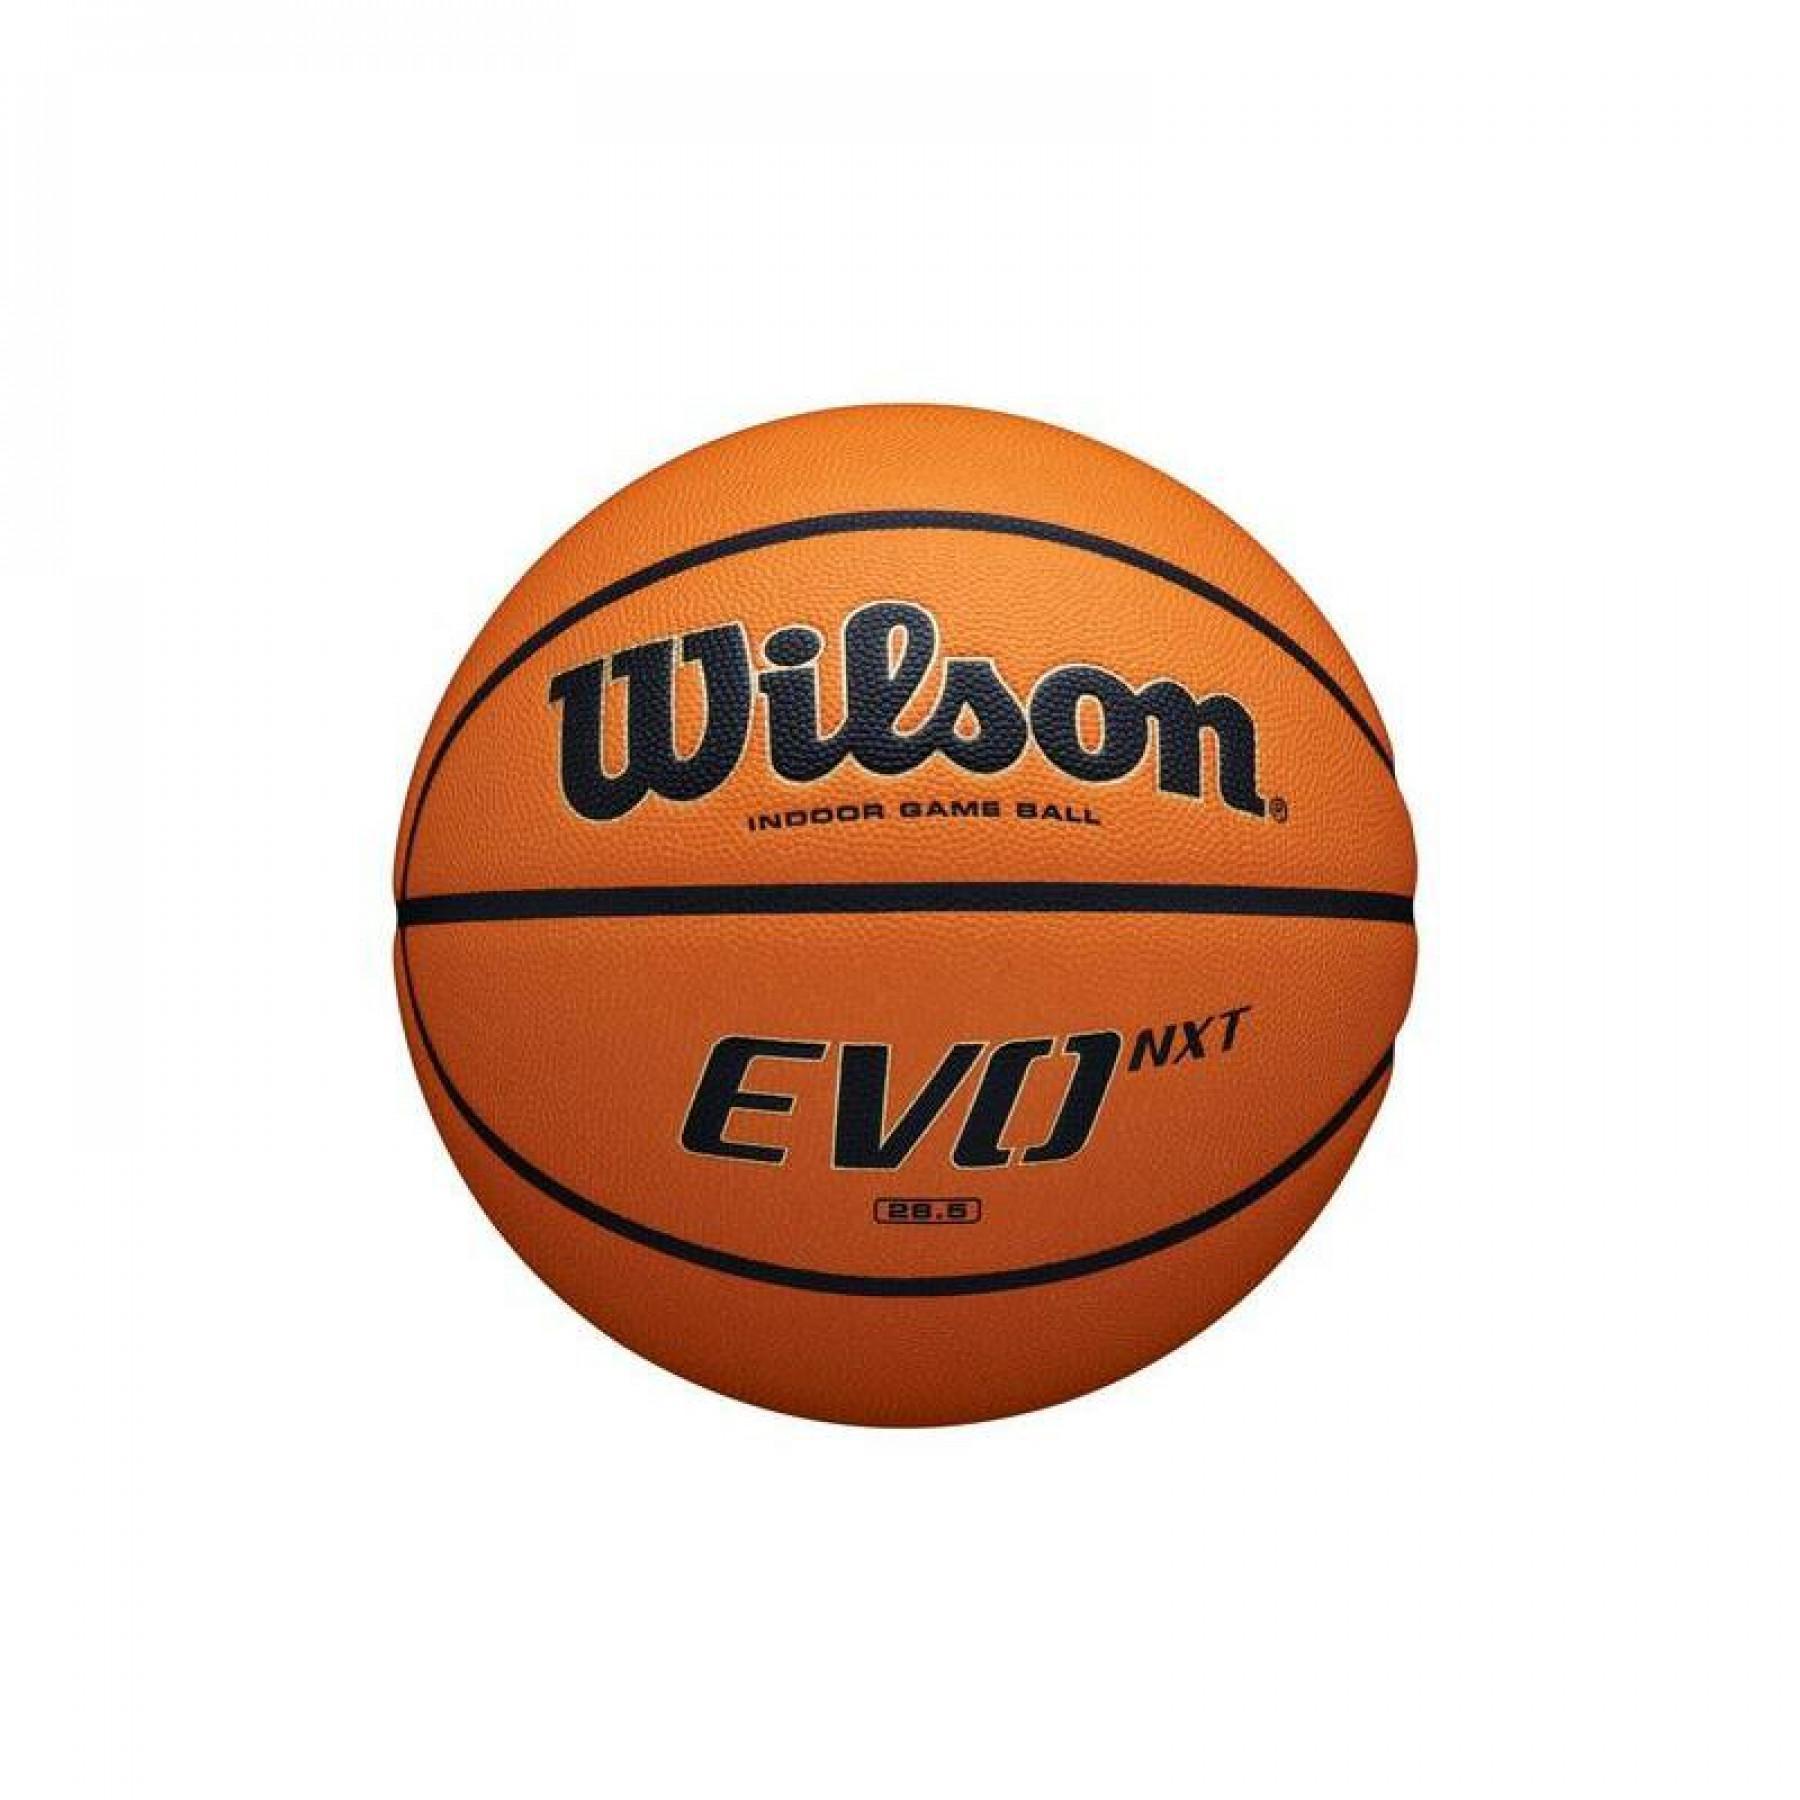 Ballon Wilson Evo Nxt 28.5